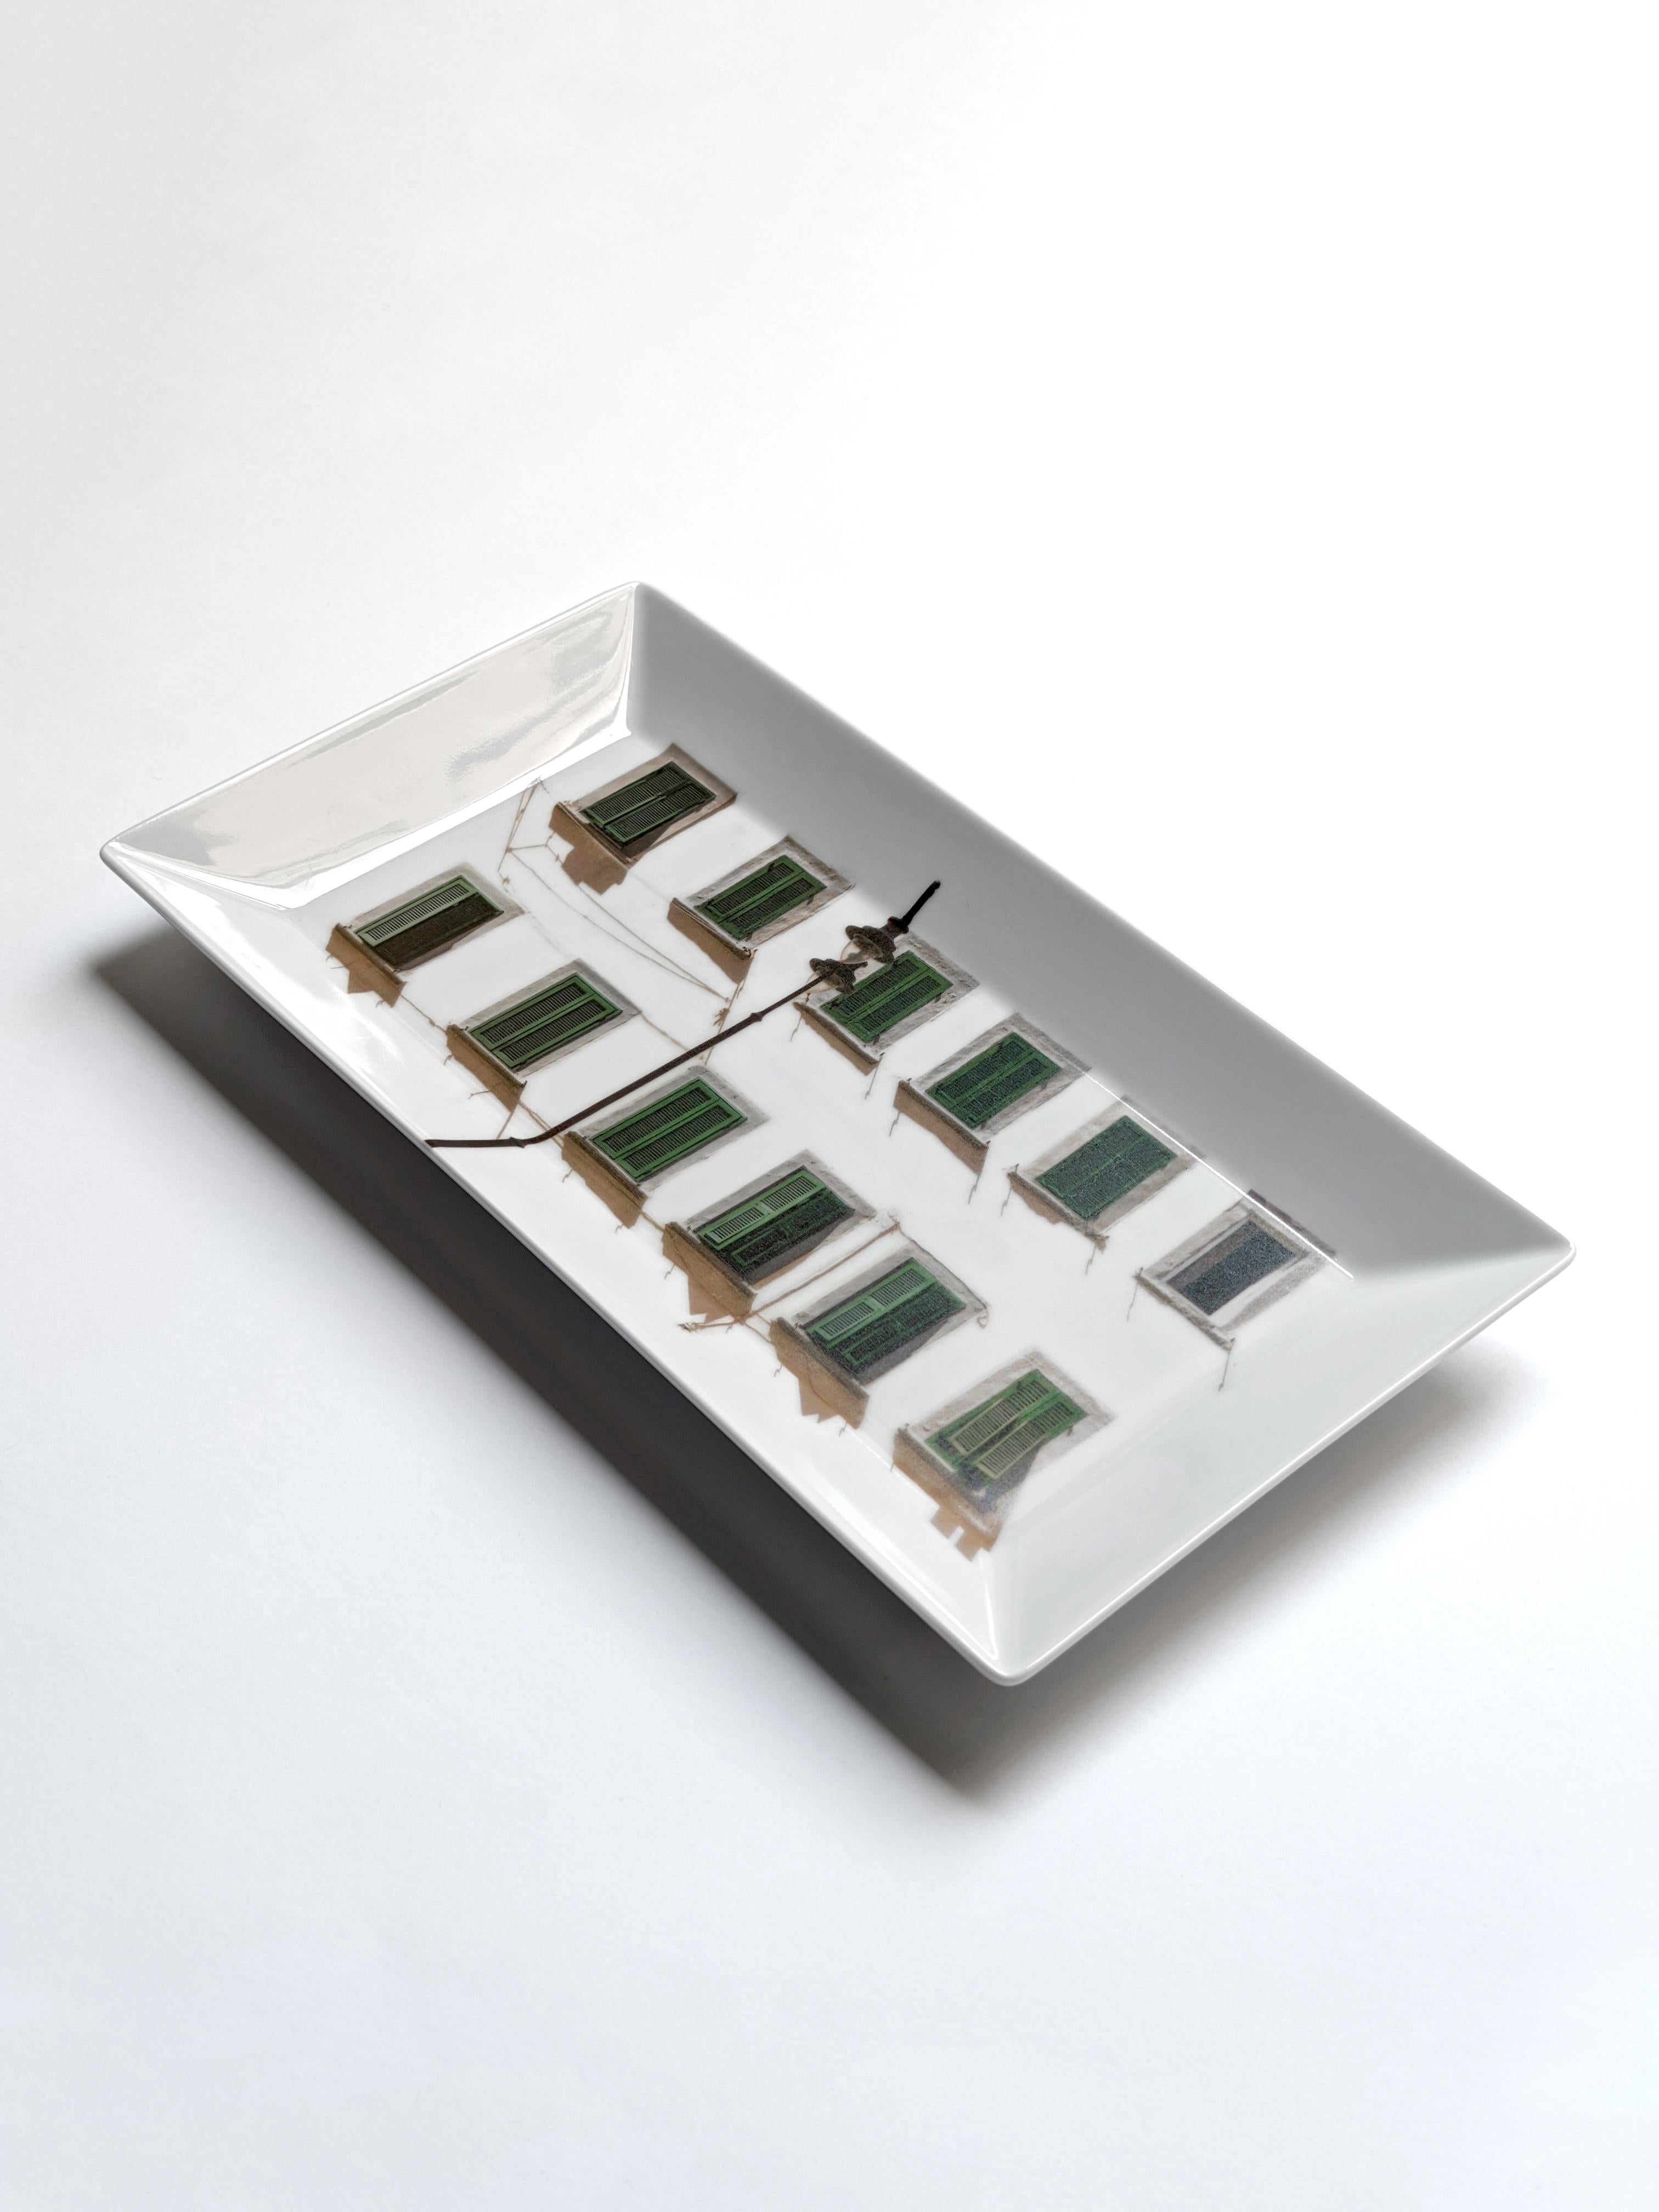 La Finestra sul Cortile est une collection de centres de table et de vide-poches aux formes simples et carrées sur lesquels sont placées différentes façades de bâtiments. La gamme des décors est large : des fenêtres sans fin des premiers gratte-ciel